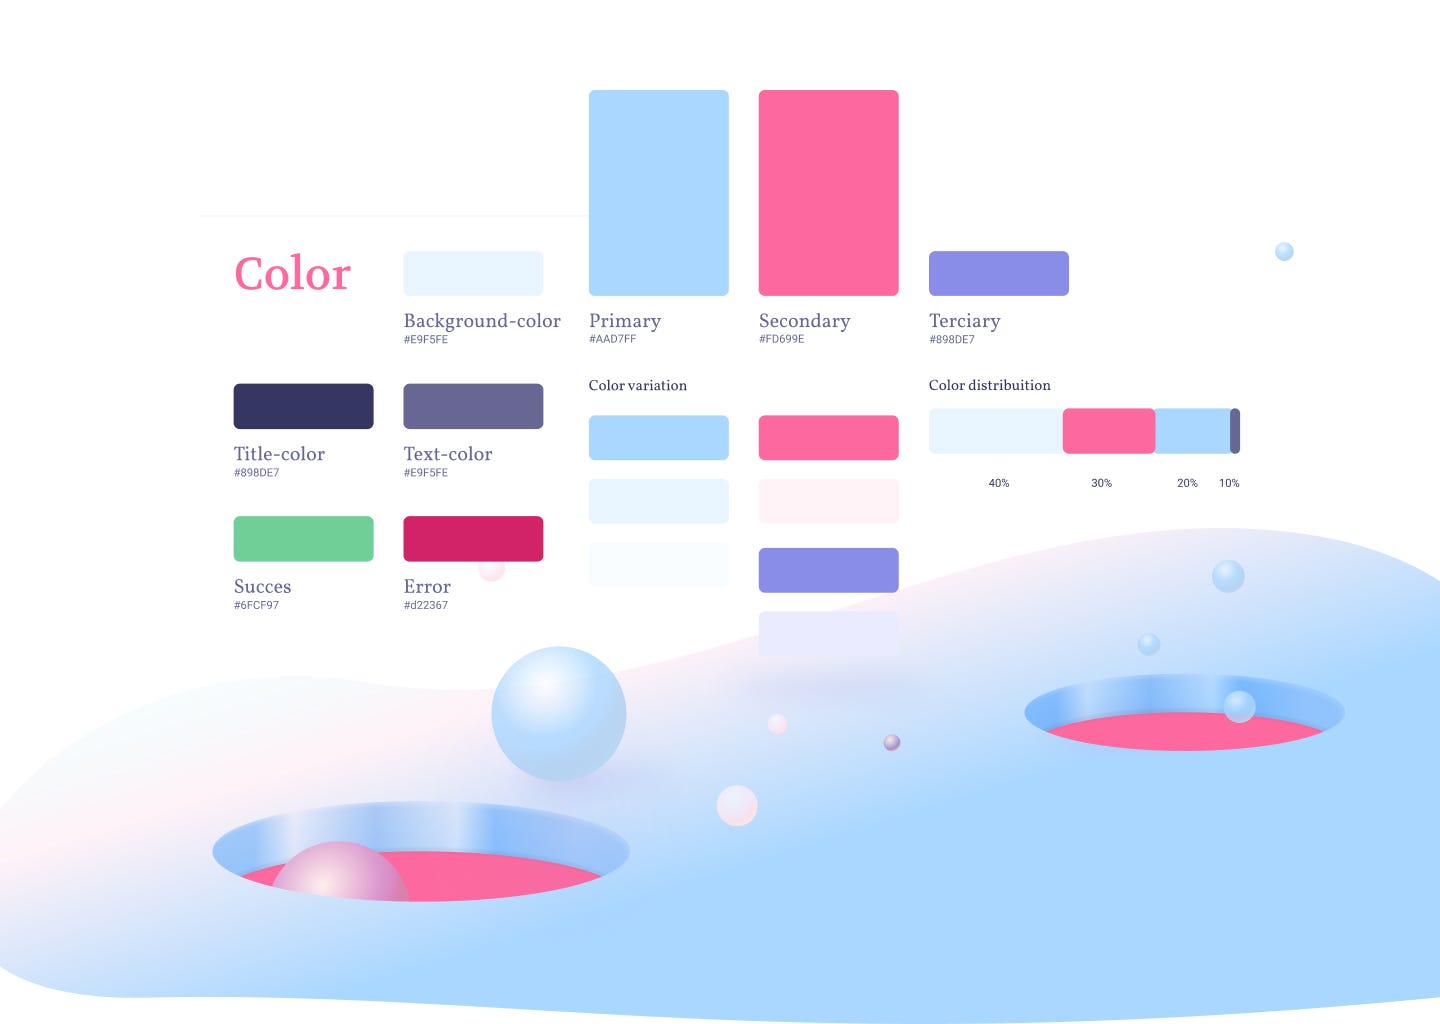 Design Shots: Os 7 contrastes de cor - Infoportugal - Sistemas de  Informação e Conteúdos